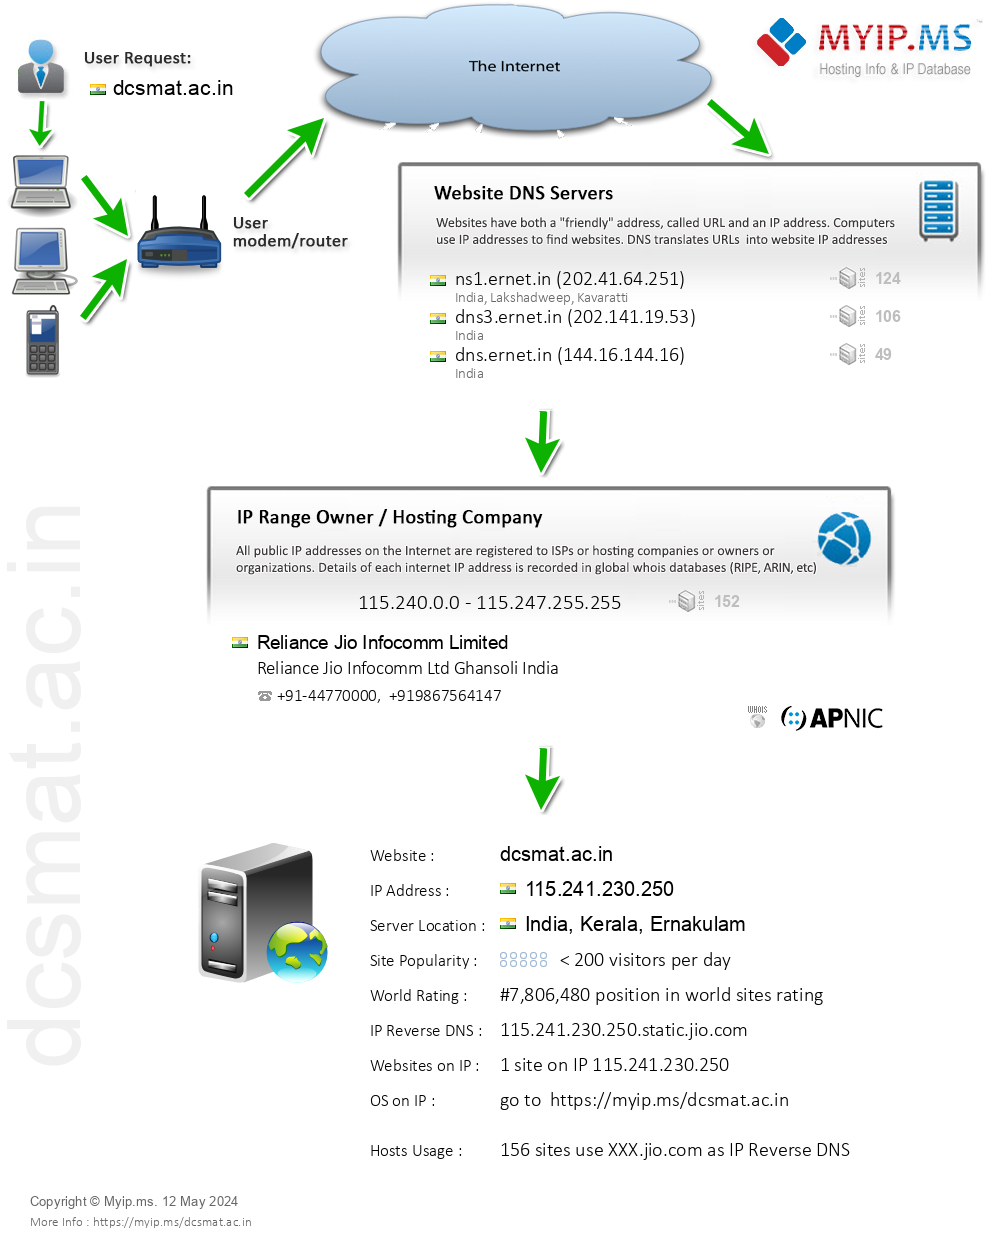 Dcsmat.ac.in - Website Hosting Visual IP Diagram